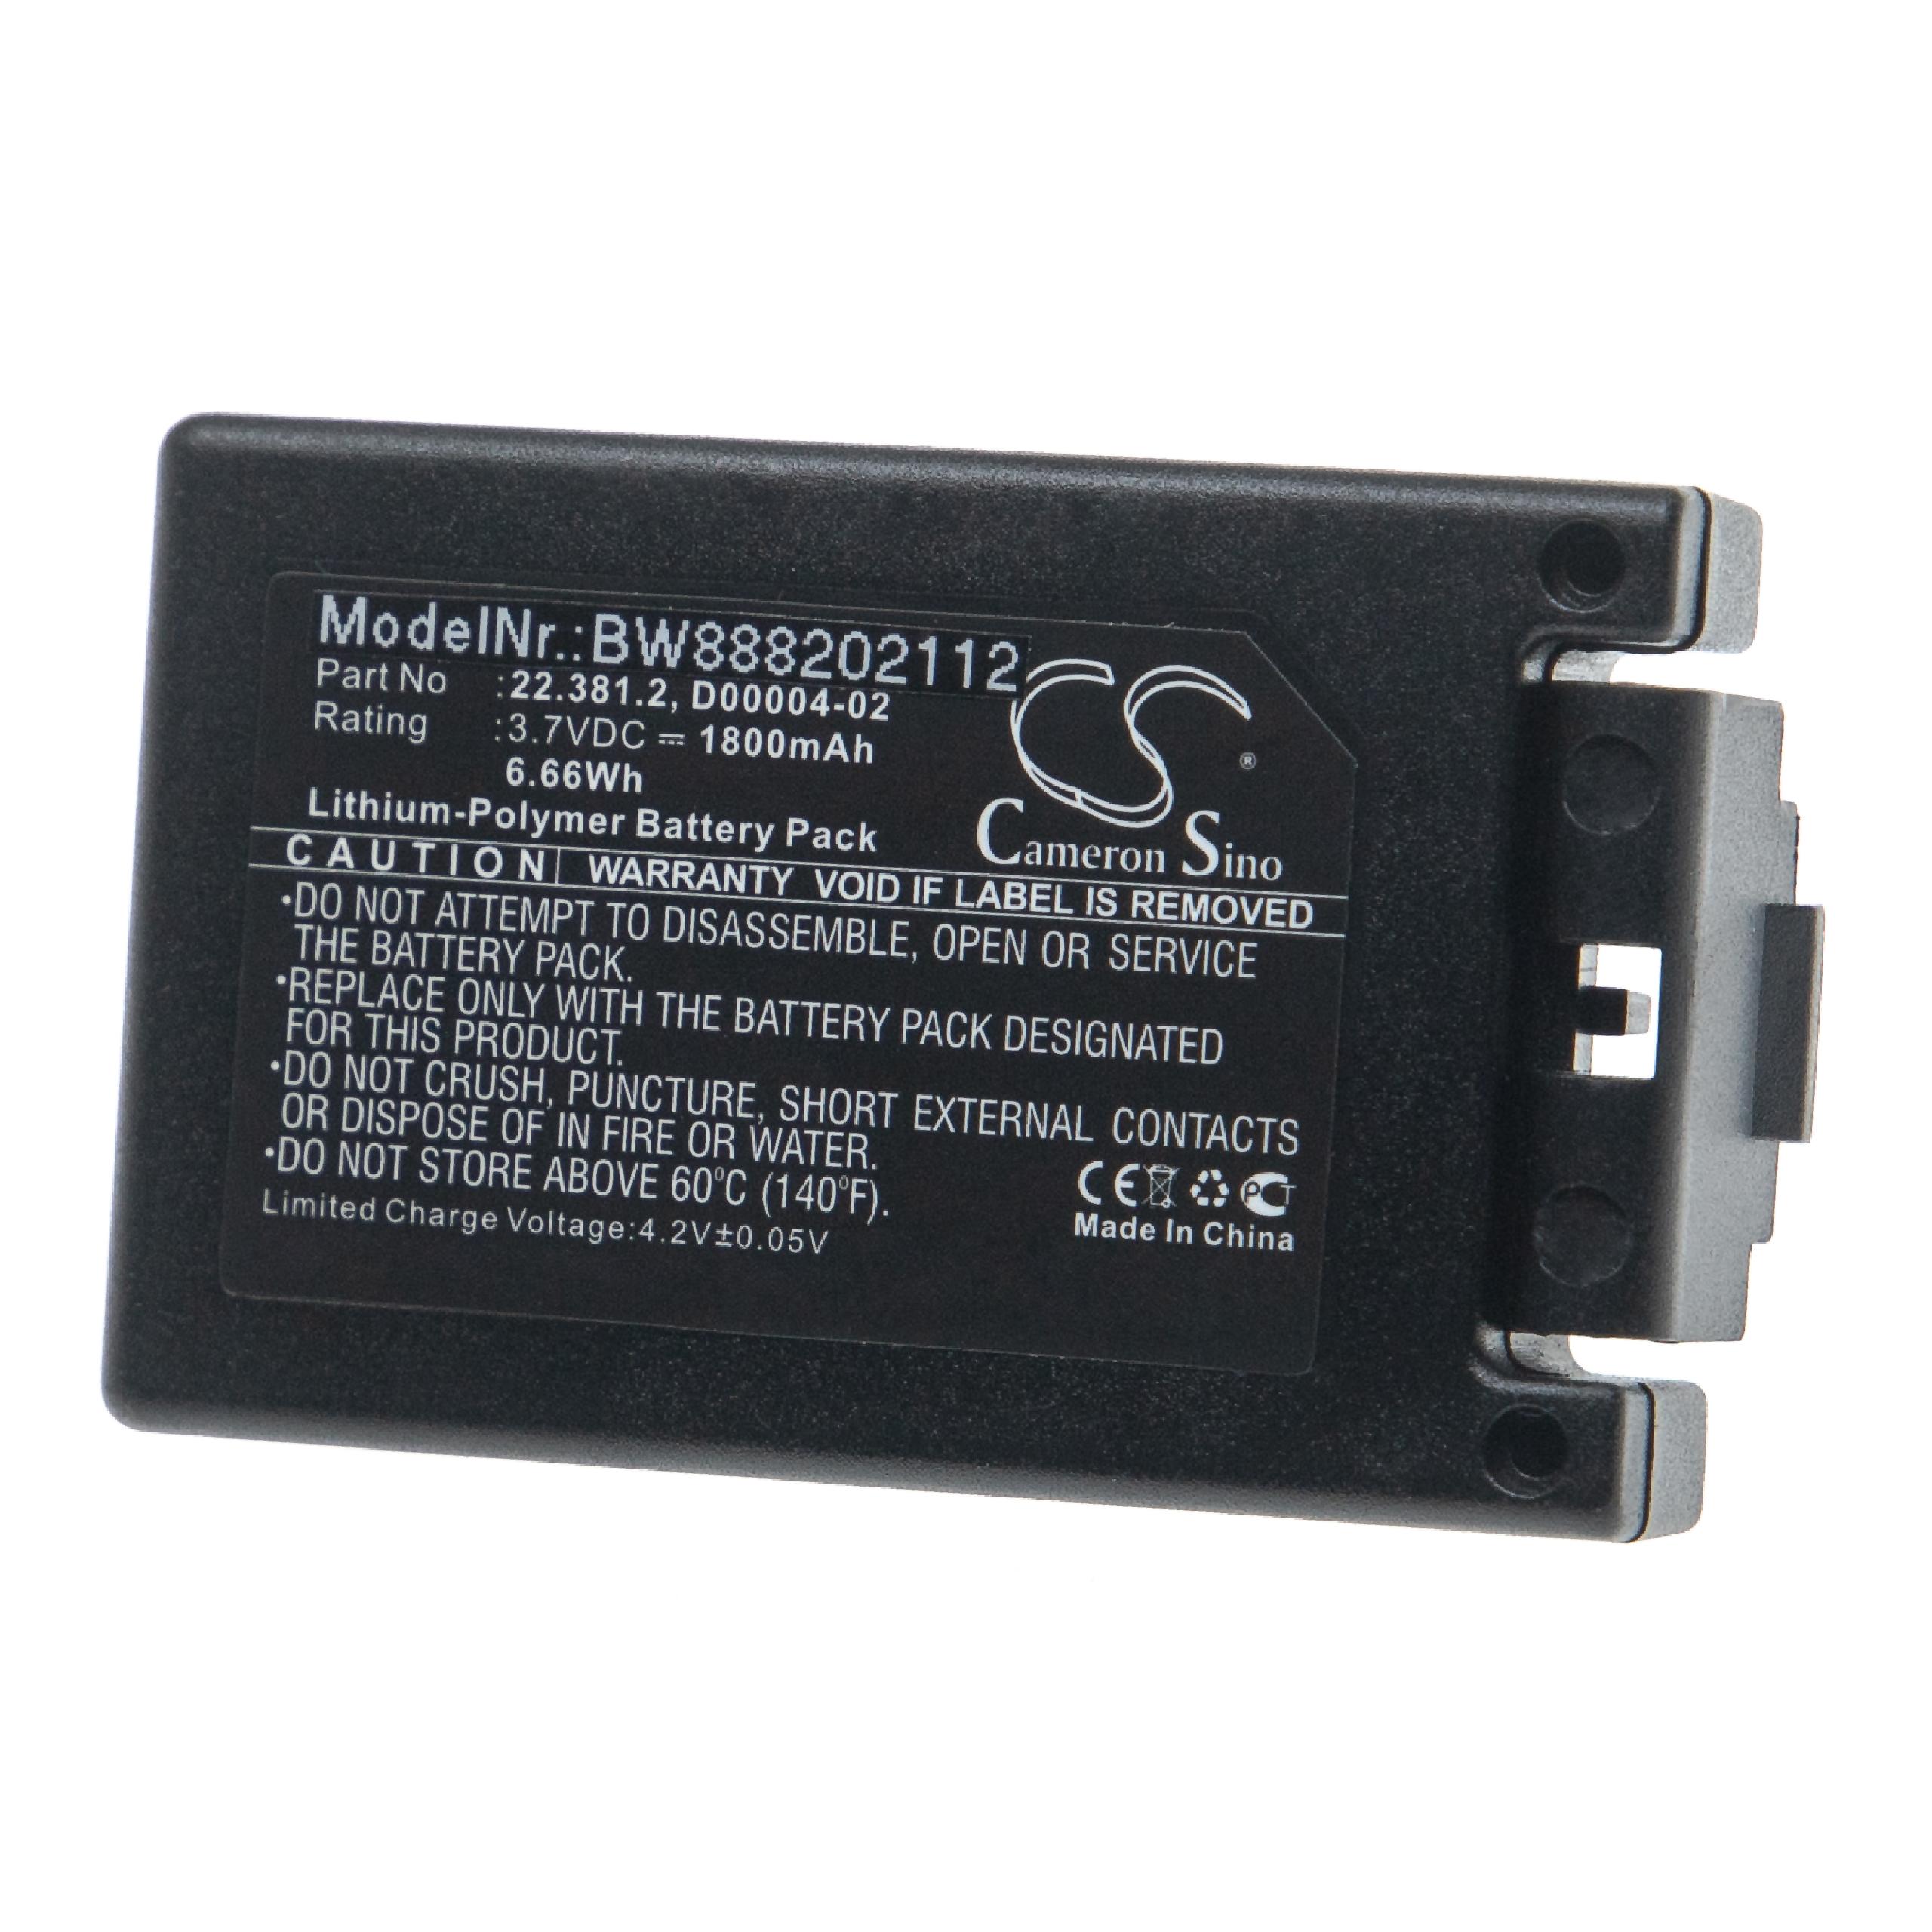 Batterie remplace Teleradio 22.381.2, D00004-02 pour télécomande industrielle - 1800mAh 3,7V Li-polymère